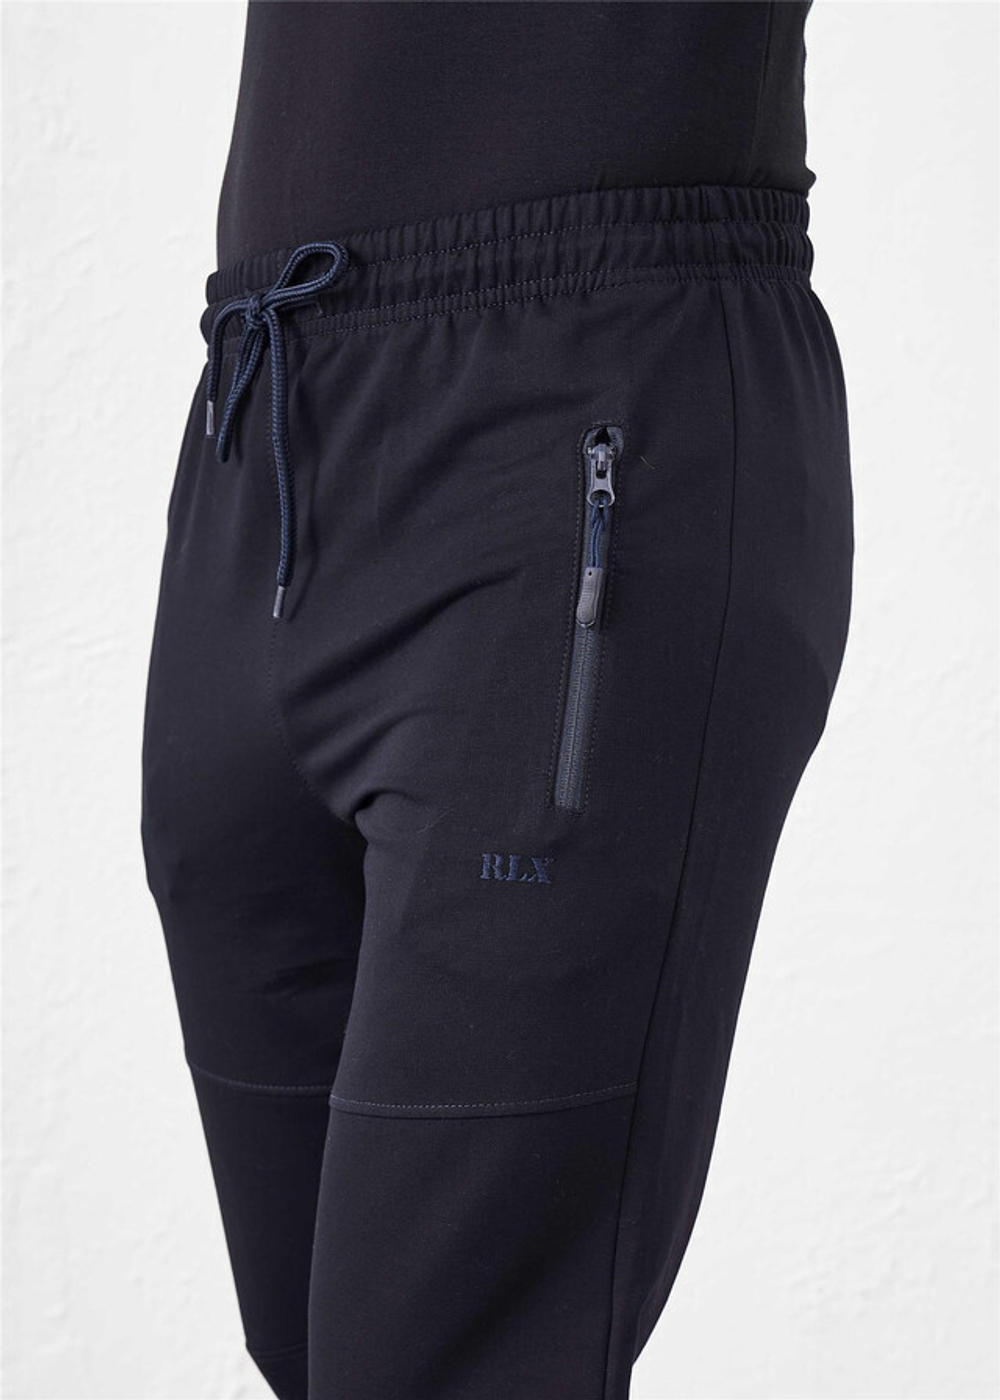 RELAX MODE / Брюки спортивные штаны мужские джоггеры - 40117